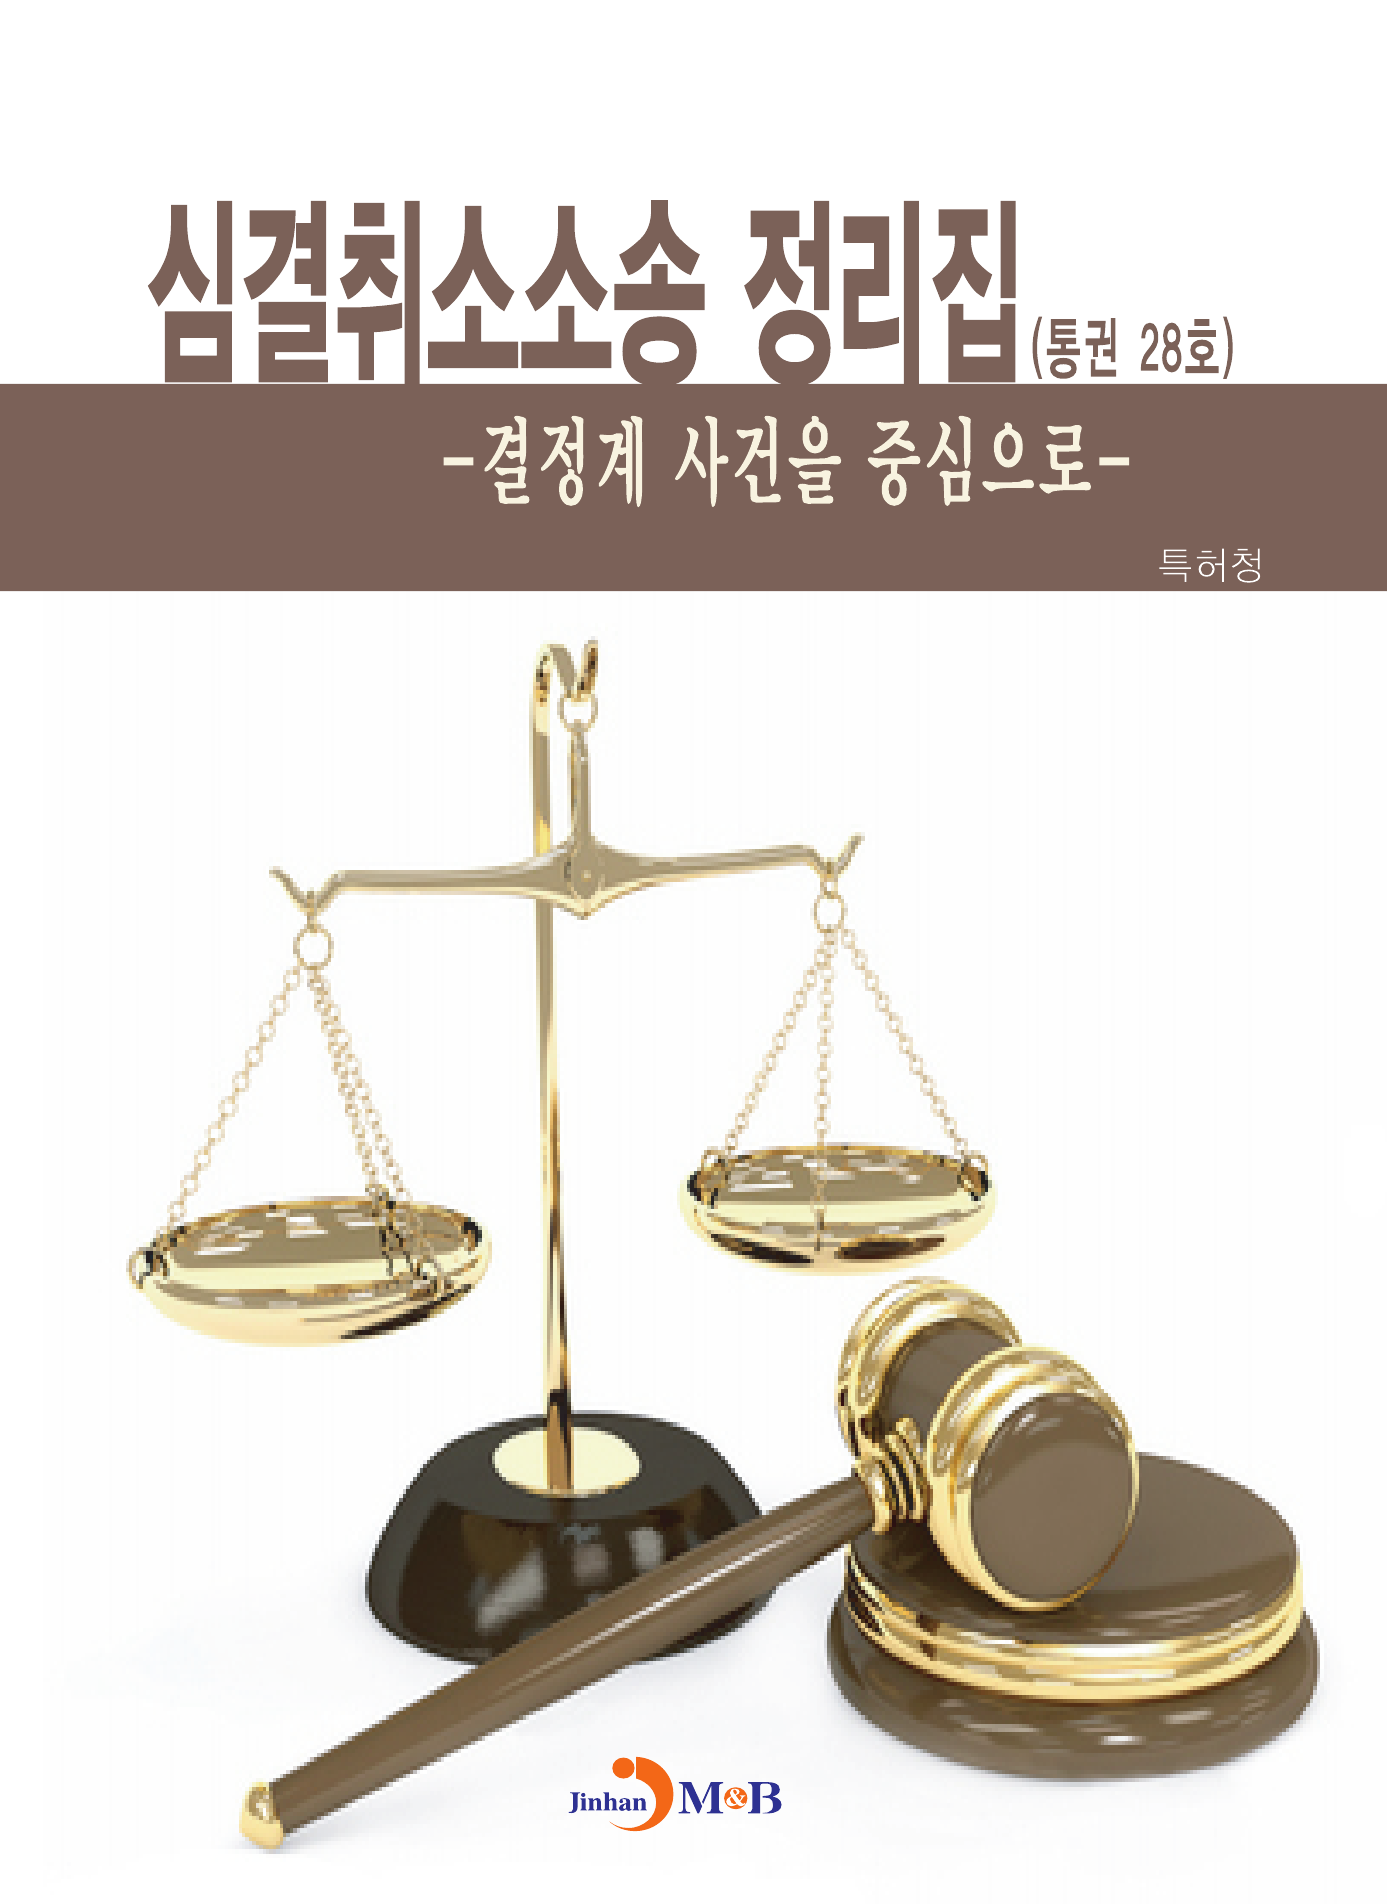 심결취소소송 정리집(통권 28호) 결정계 사건을 중심으로